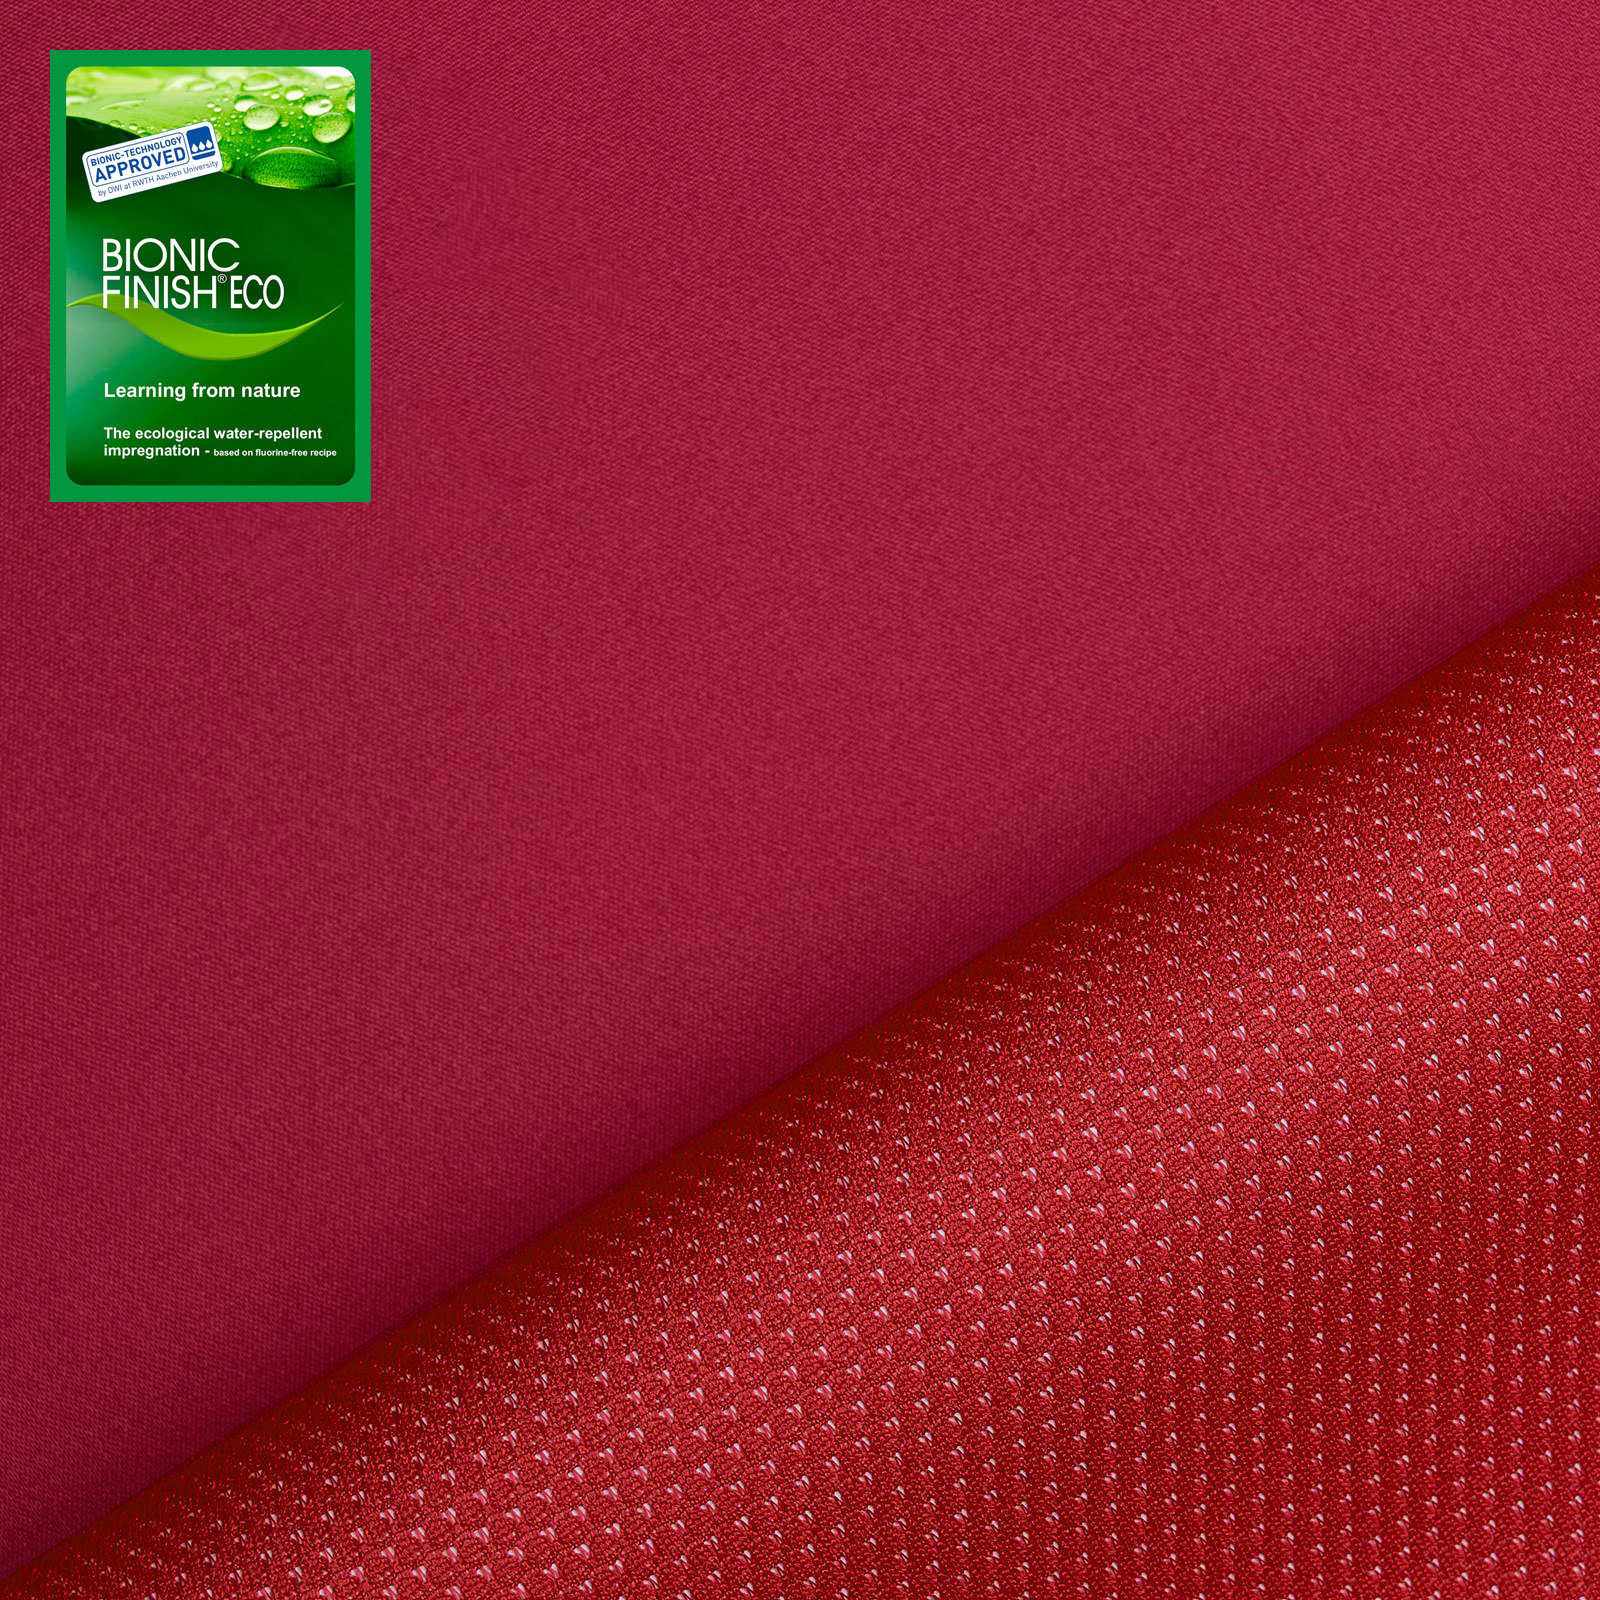 Athletik - lightweight Softshell fabric (cyclamen)